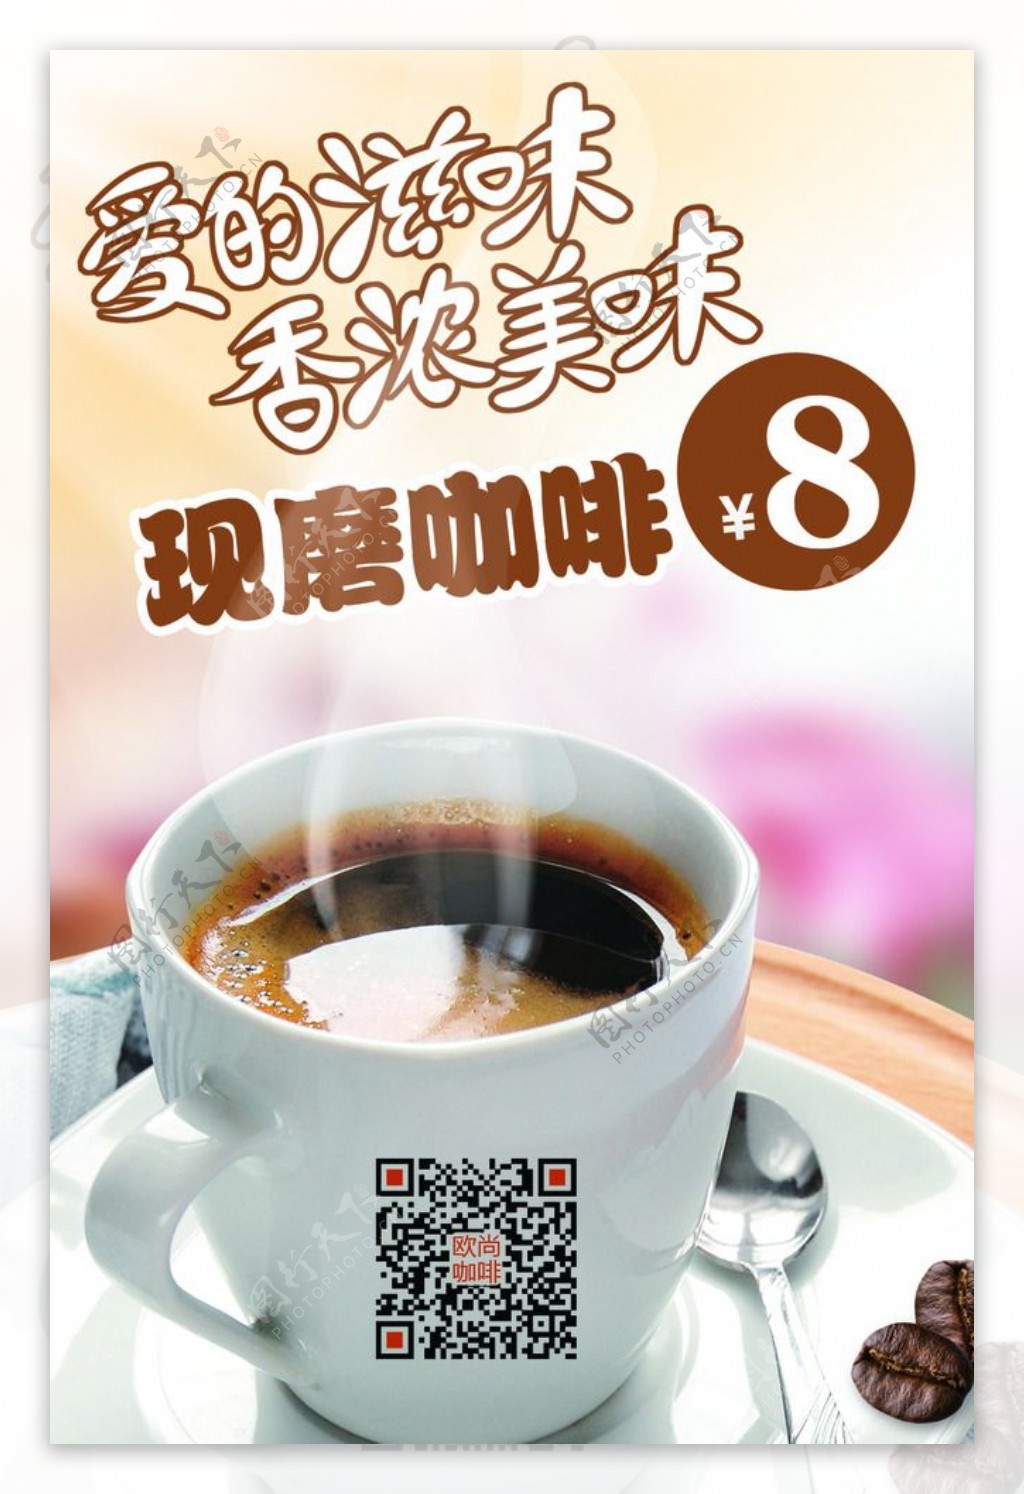 精美单品咖啡宣传卡牌图片